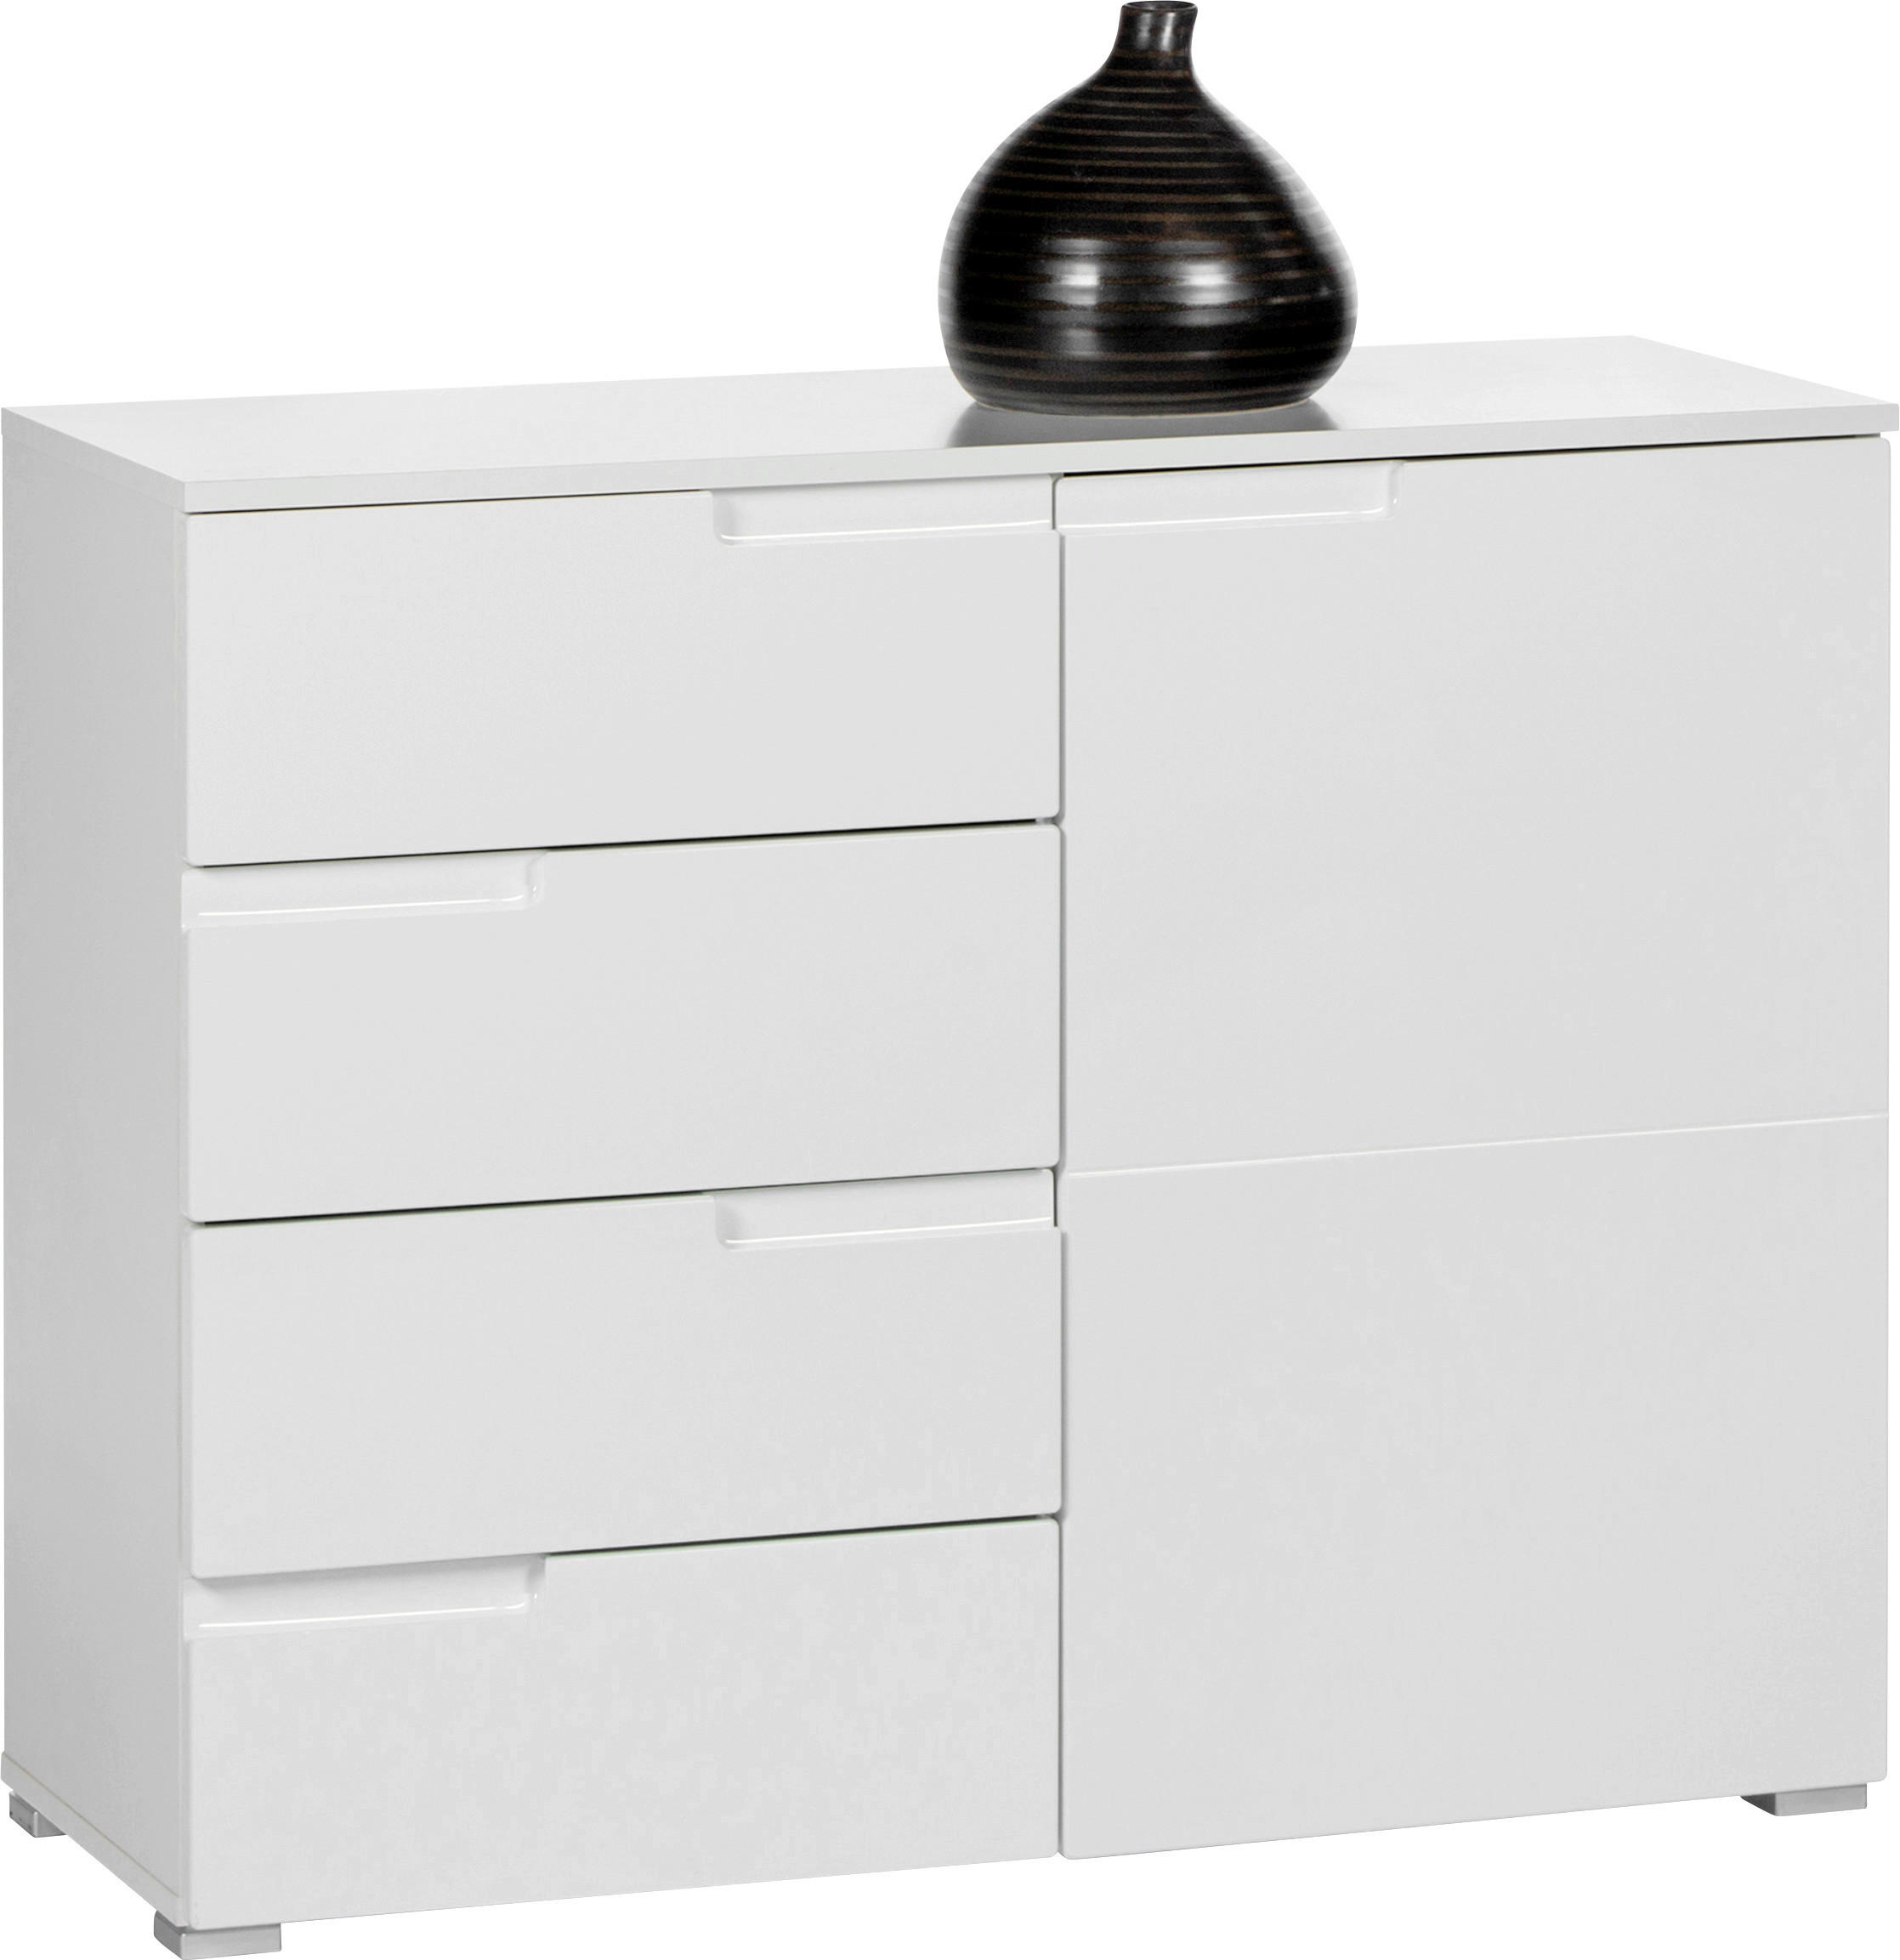 KOMMODE Weiß  - Silberfarben/Weiß, Design, Holzwerkstoff/Kunststoff (100/80/40cm) - Carryhome